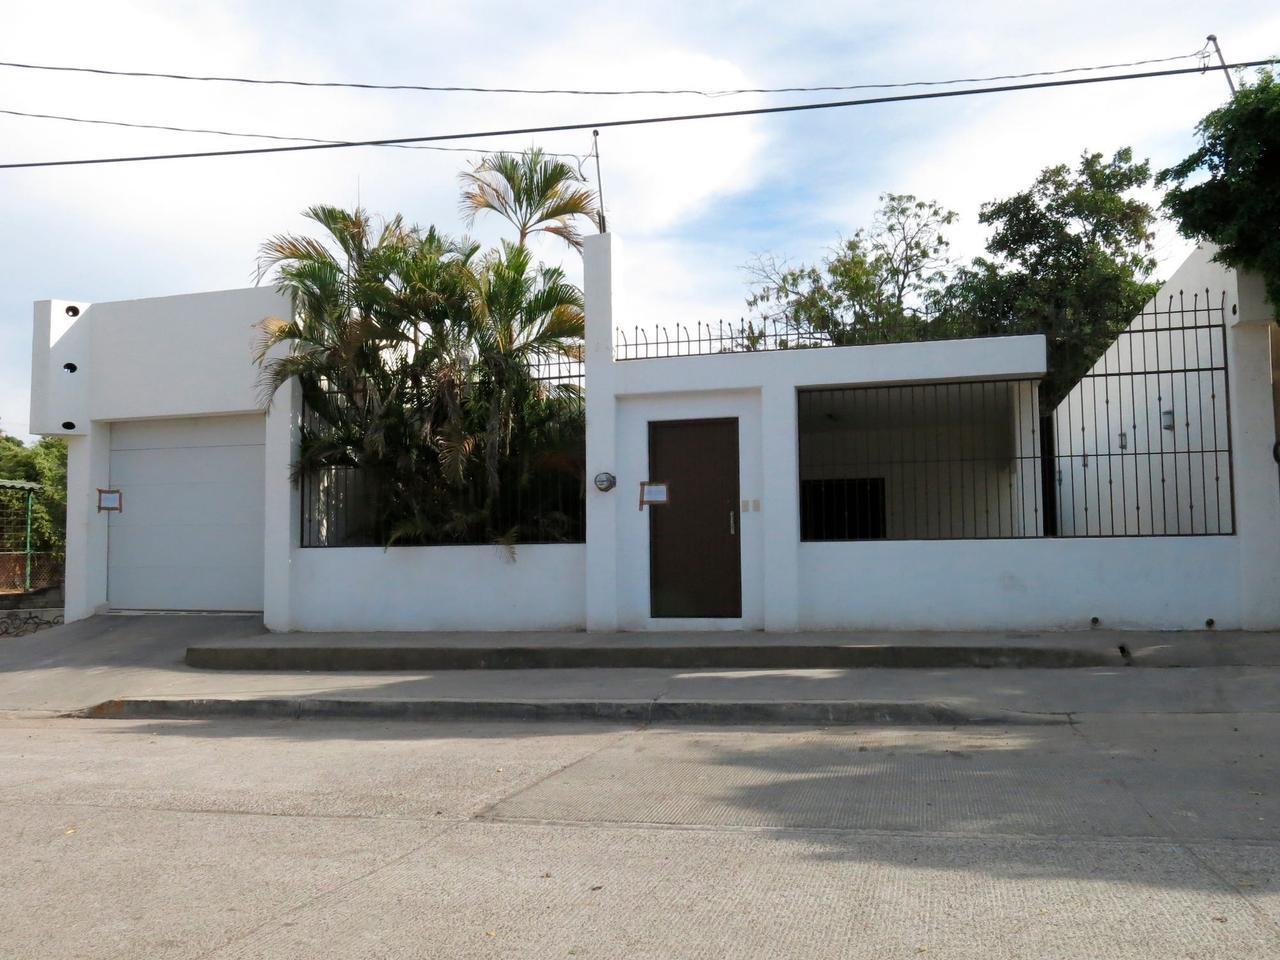 メキシコのクリアカンにある、エル・チャポとして知られる悪名高き麻薬王、ホアキン・グスマン・ロエーラの邸宅。当局の逃れるために使った脱出口もある。2014年2月23日撮影。